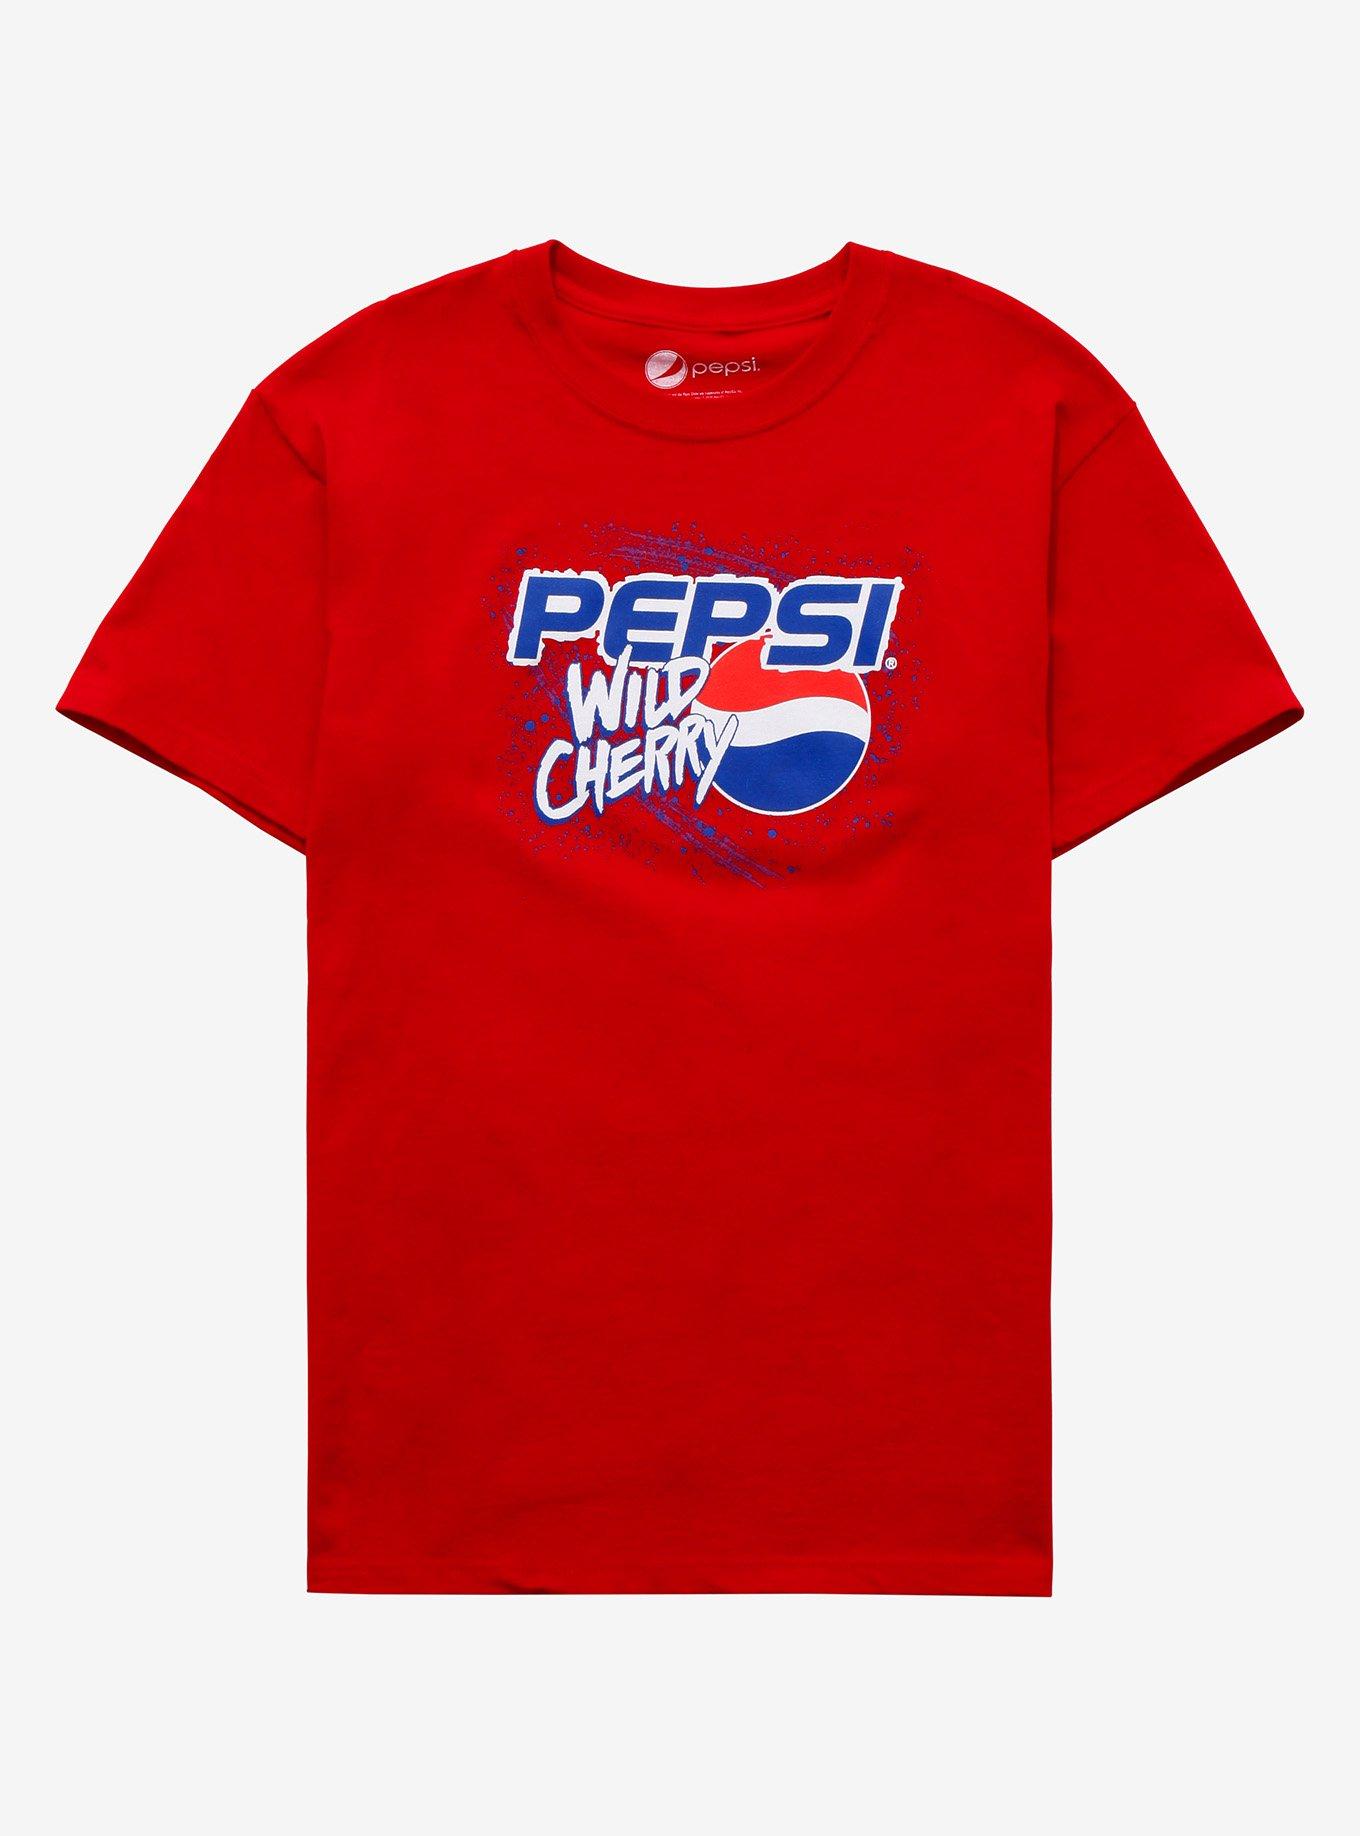 Pepsi Wild Cherry Boyfriend Fit Girls T-Shirt | Hot Topic